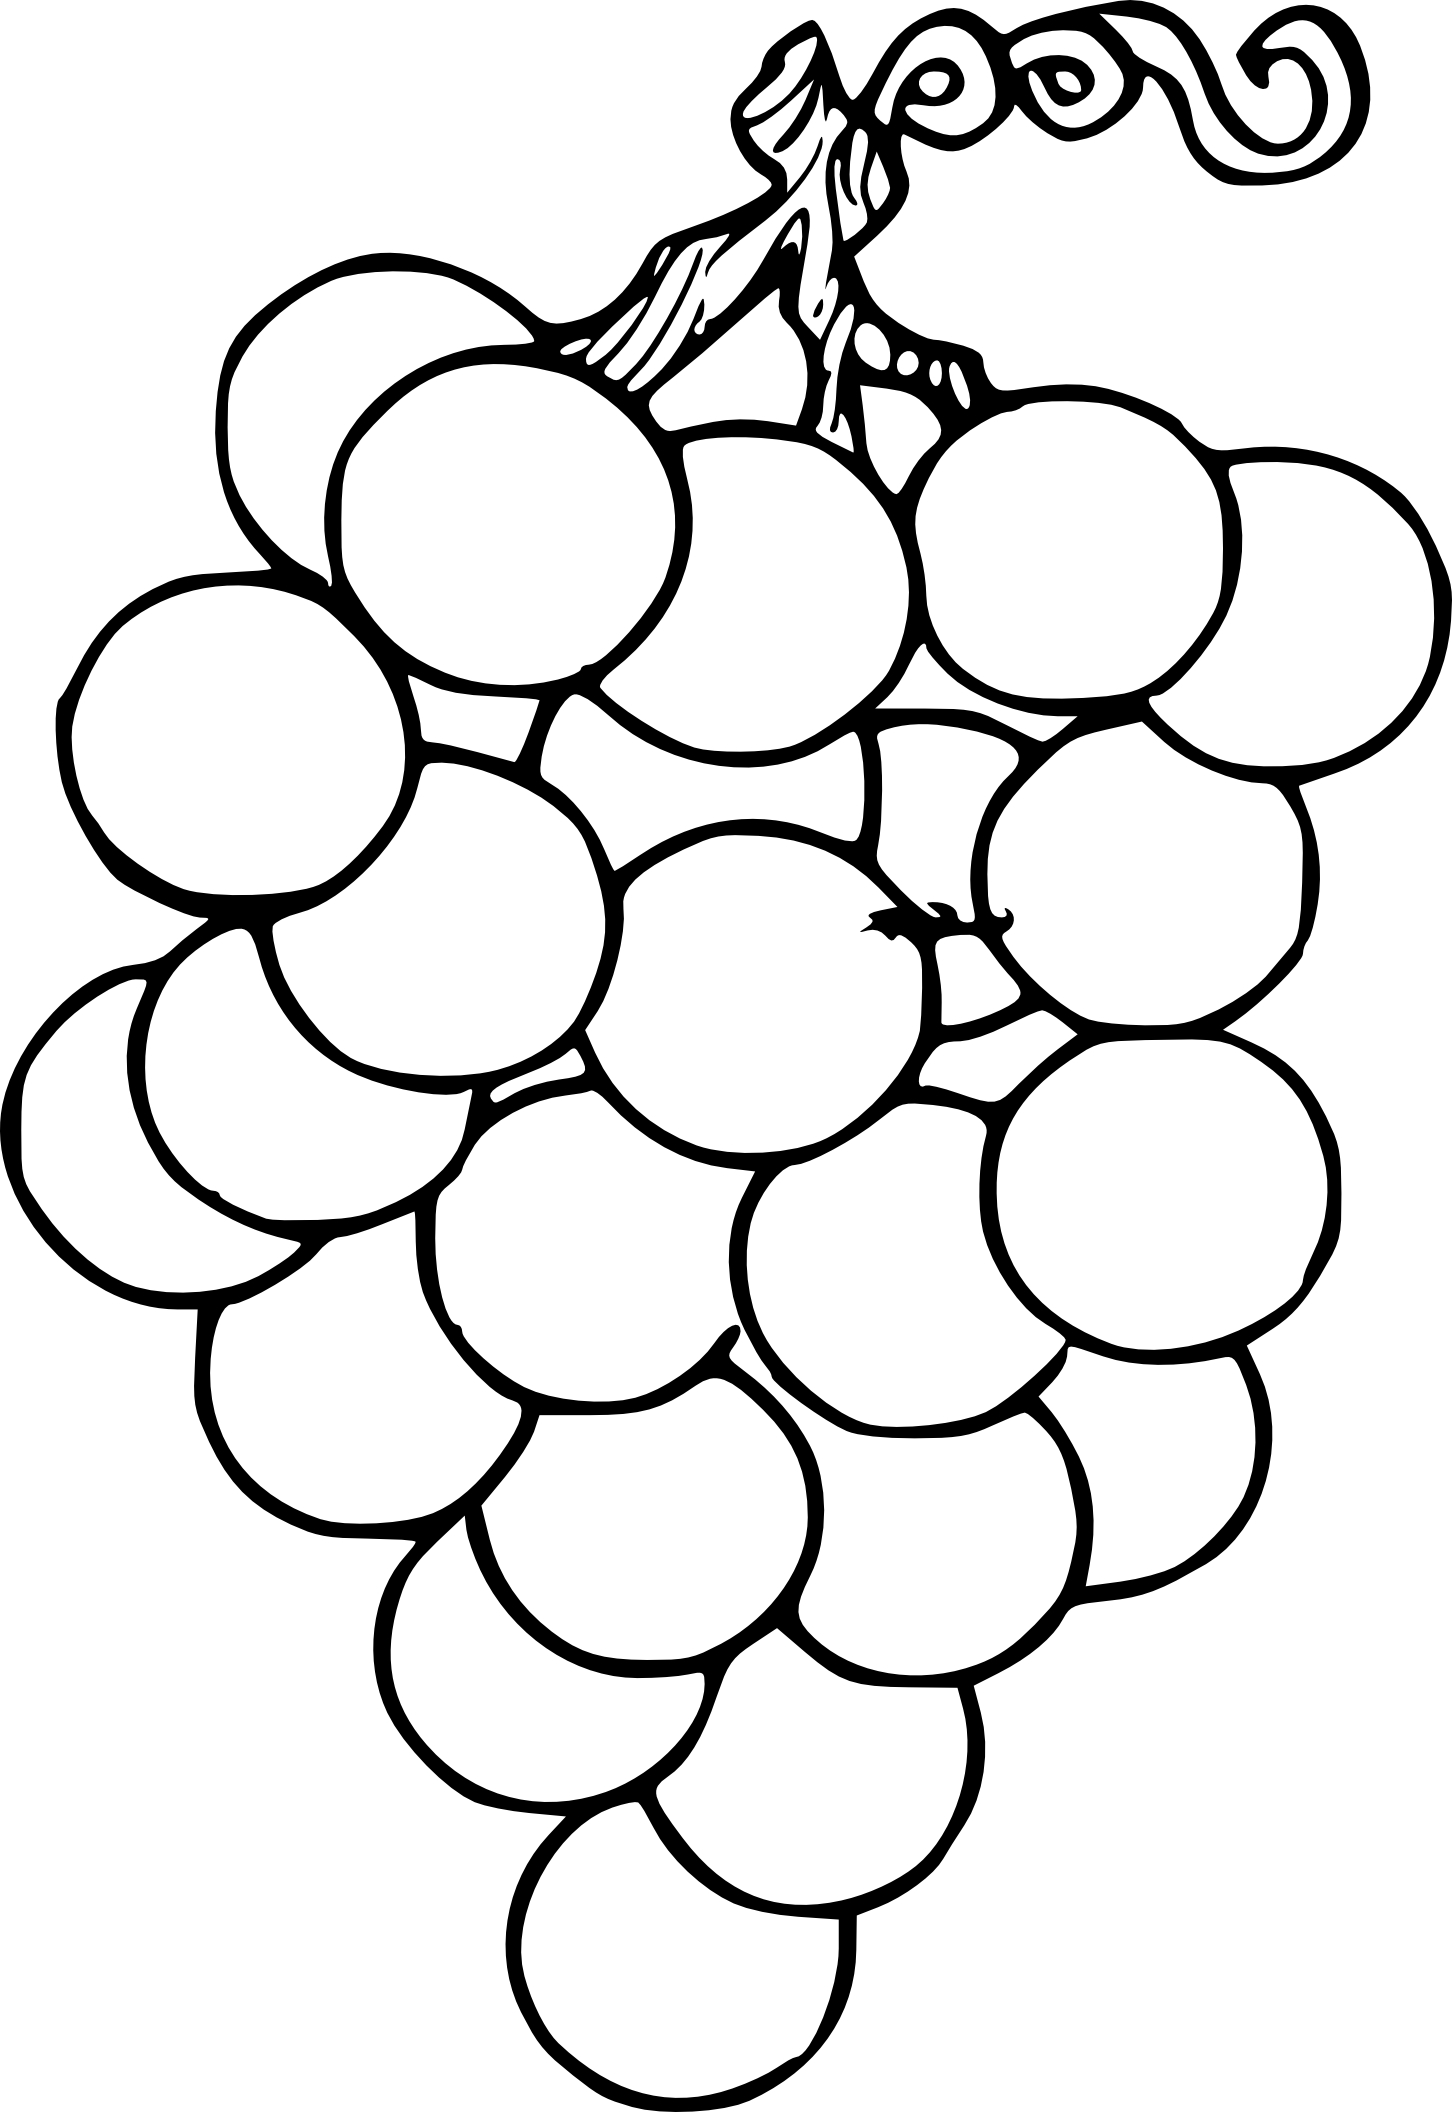 Disegno di Grappolo d'uva gratuito da colorare